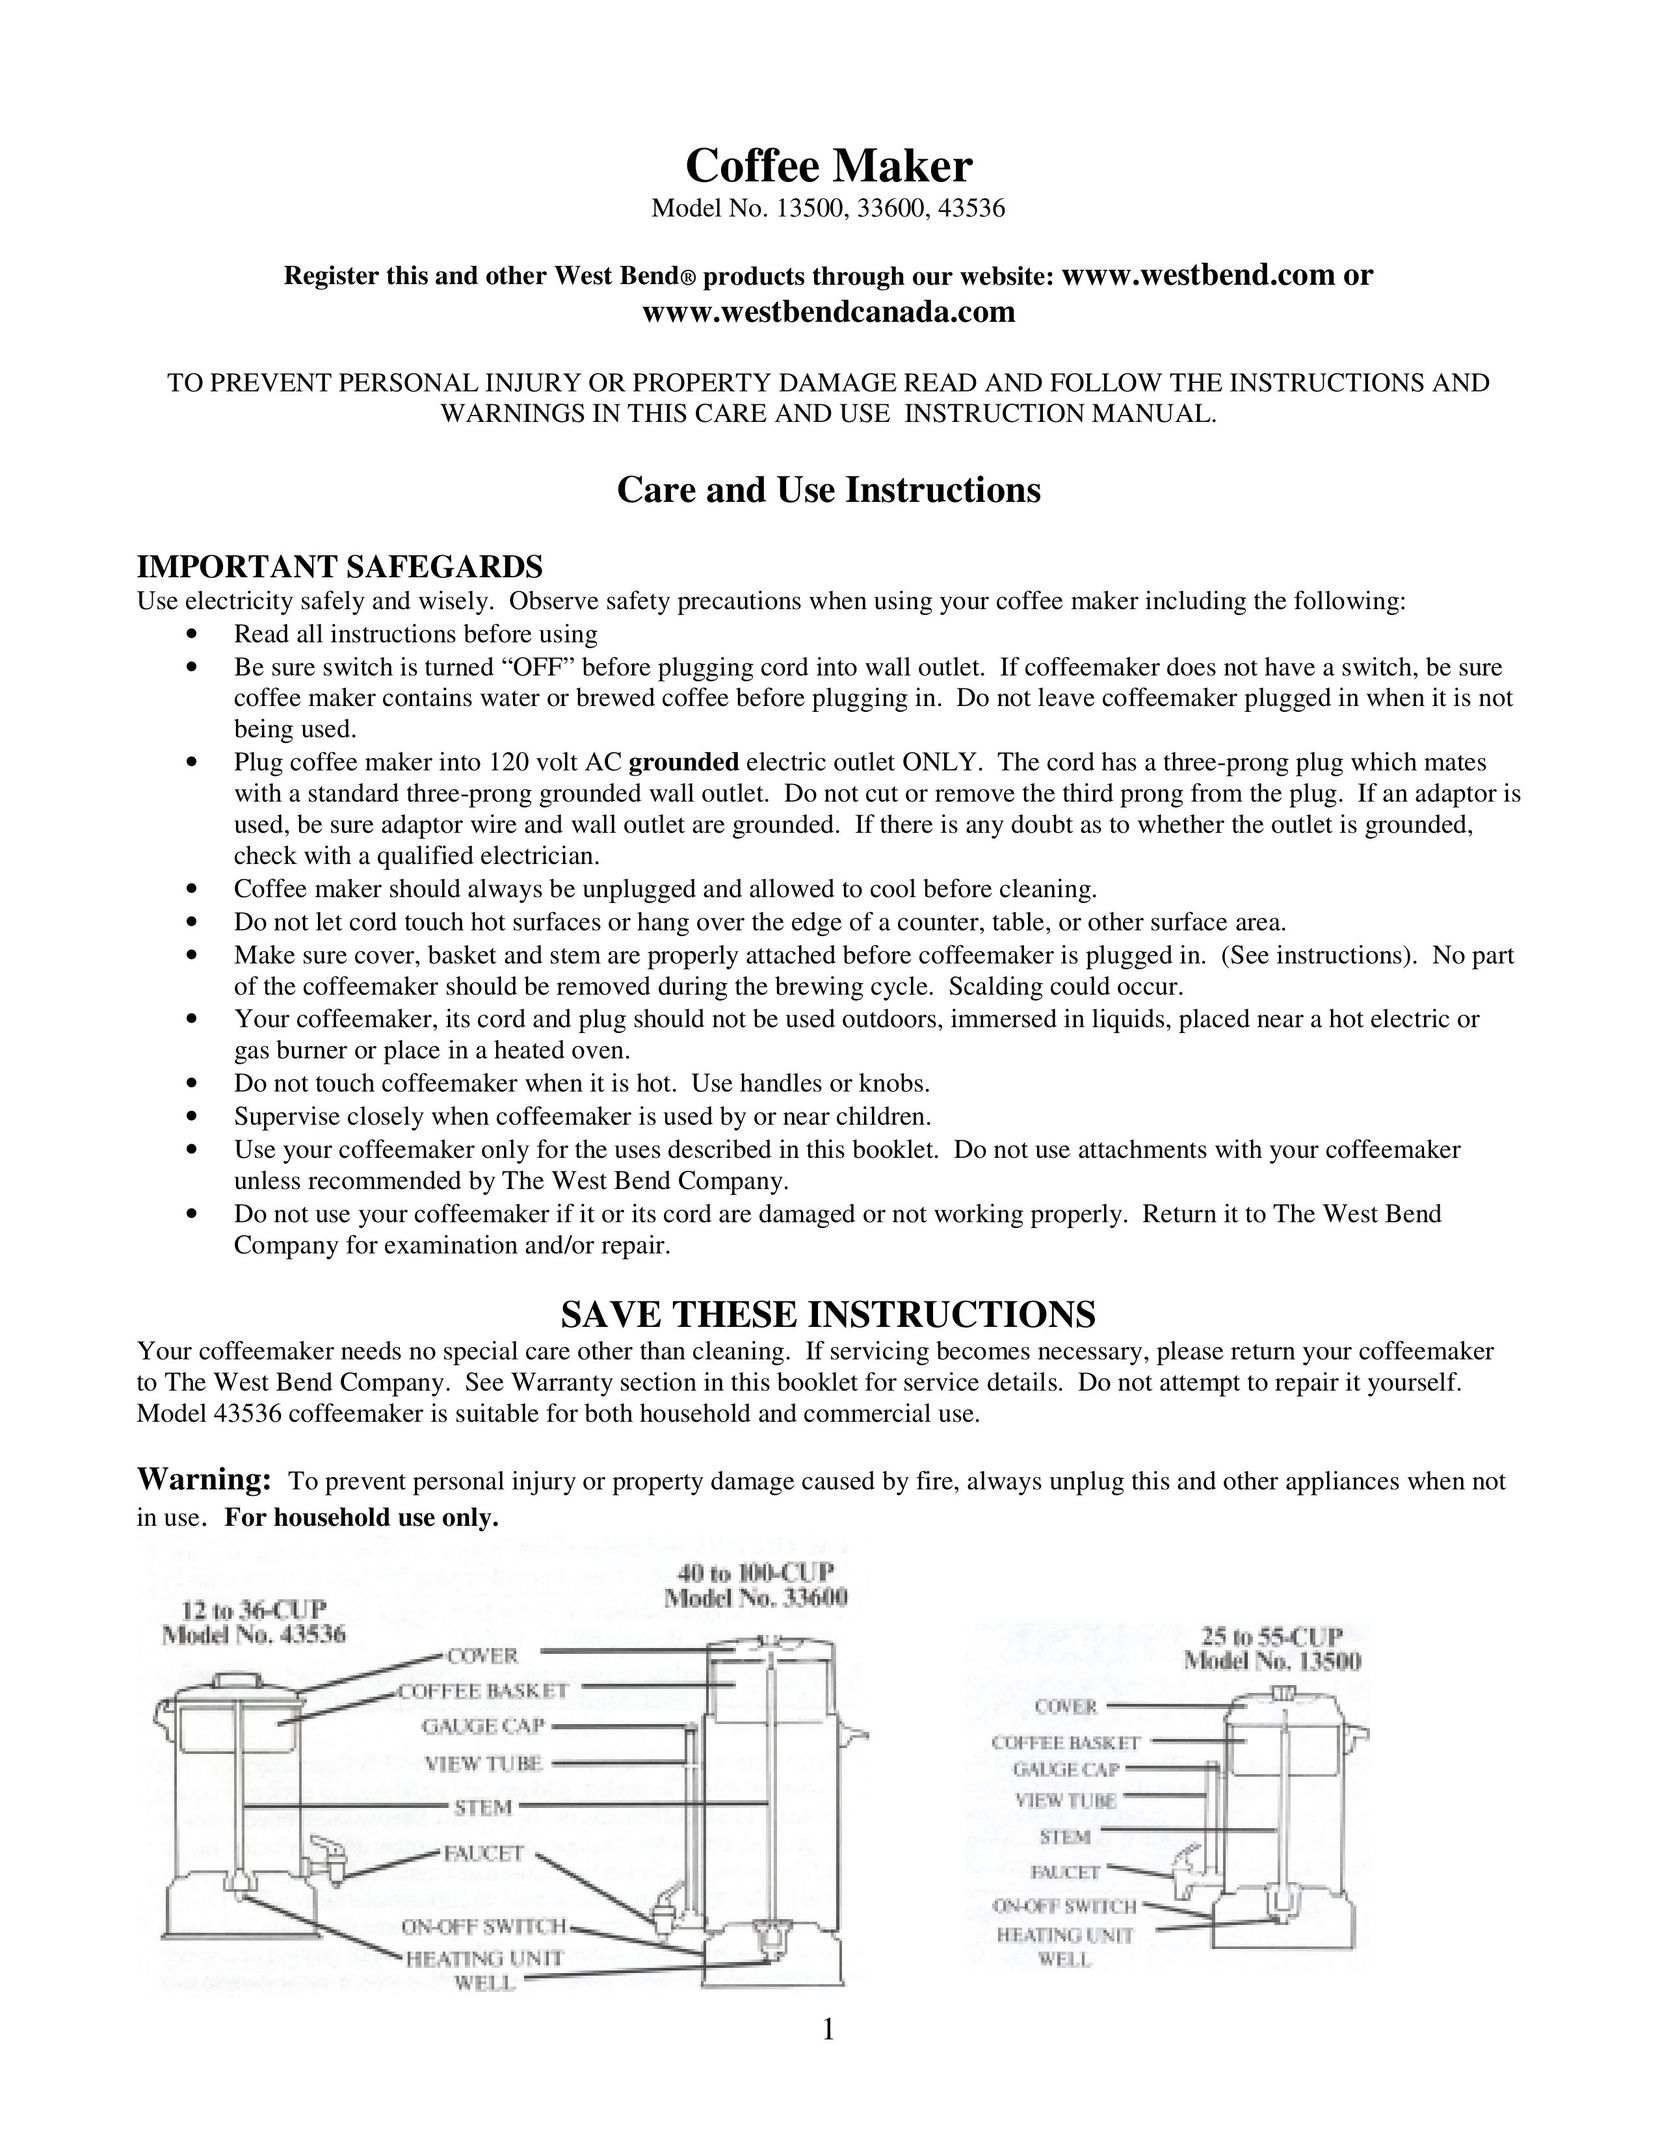 West Bend 13500 Coffeemaker User Manual